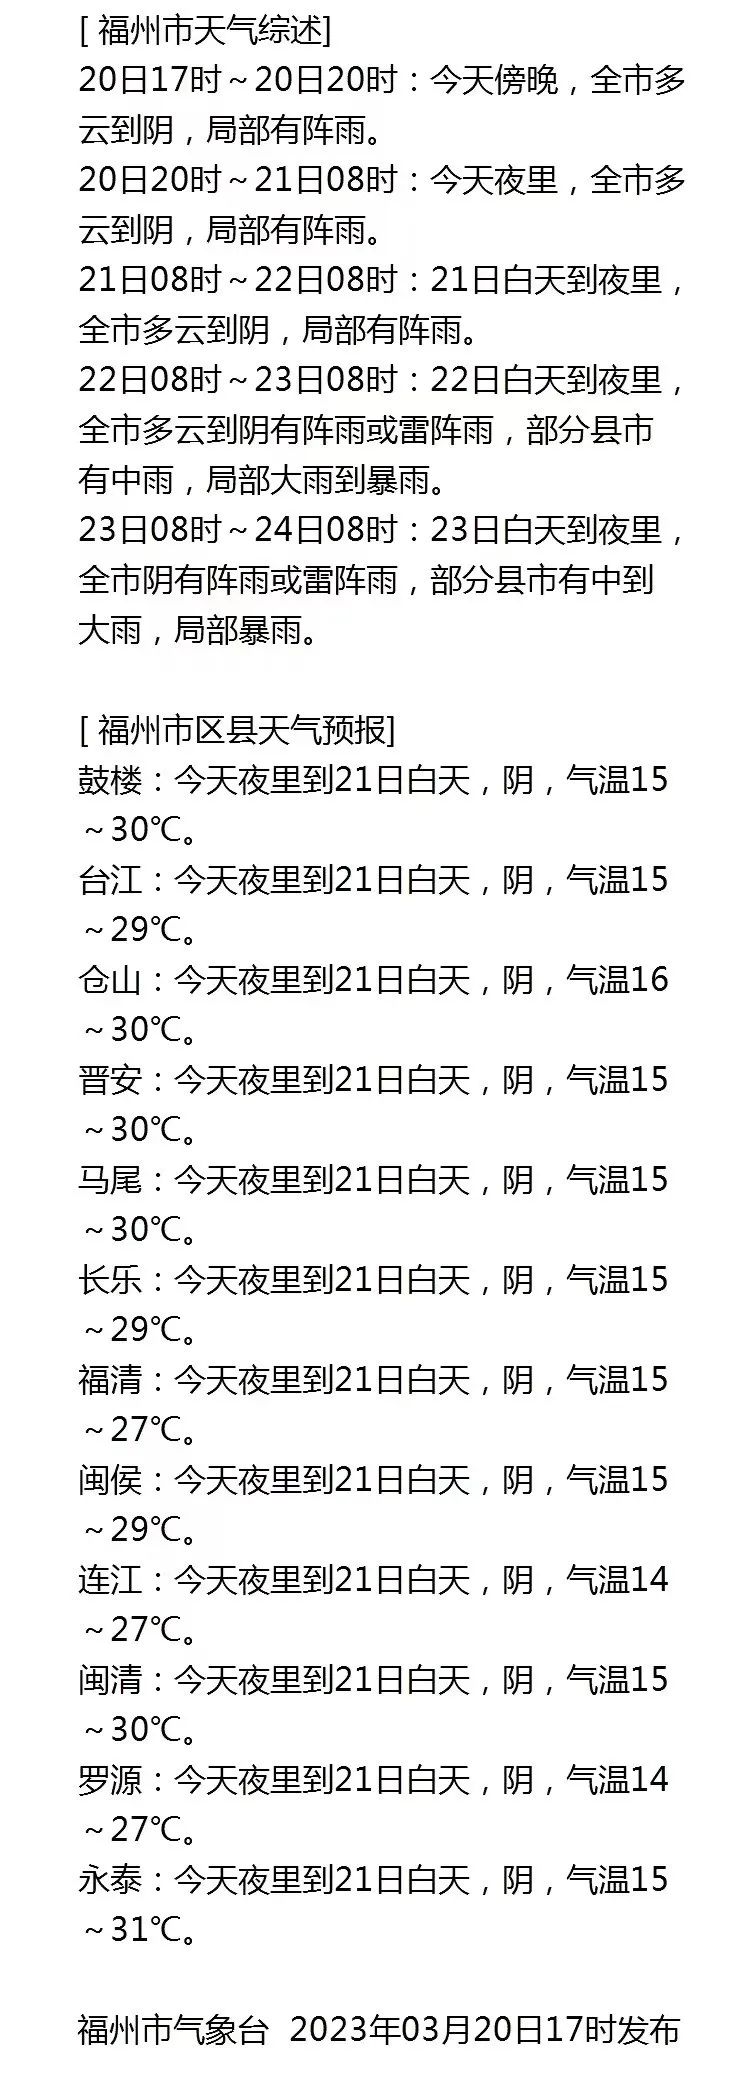 福州气温直冲30℃ 过几天可能有暴雨